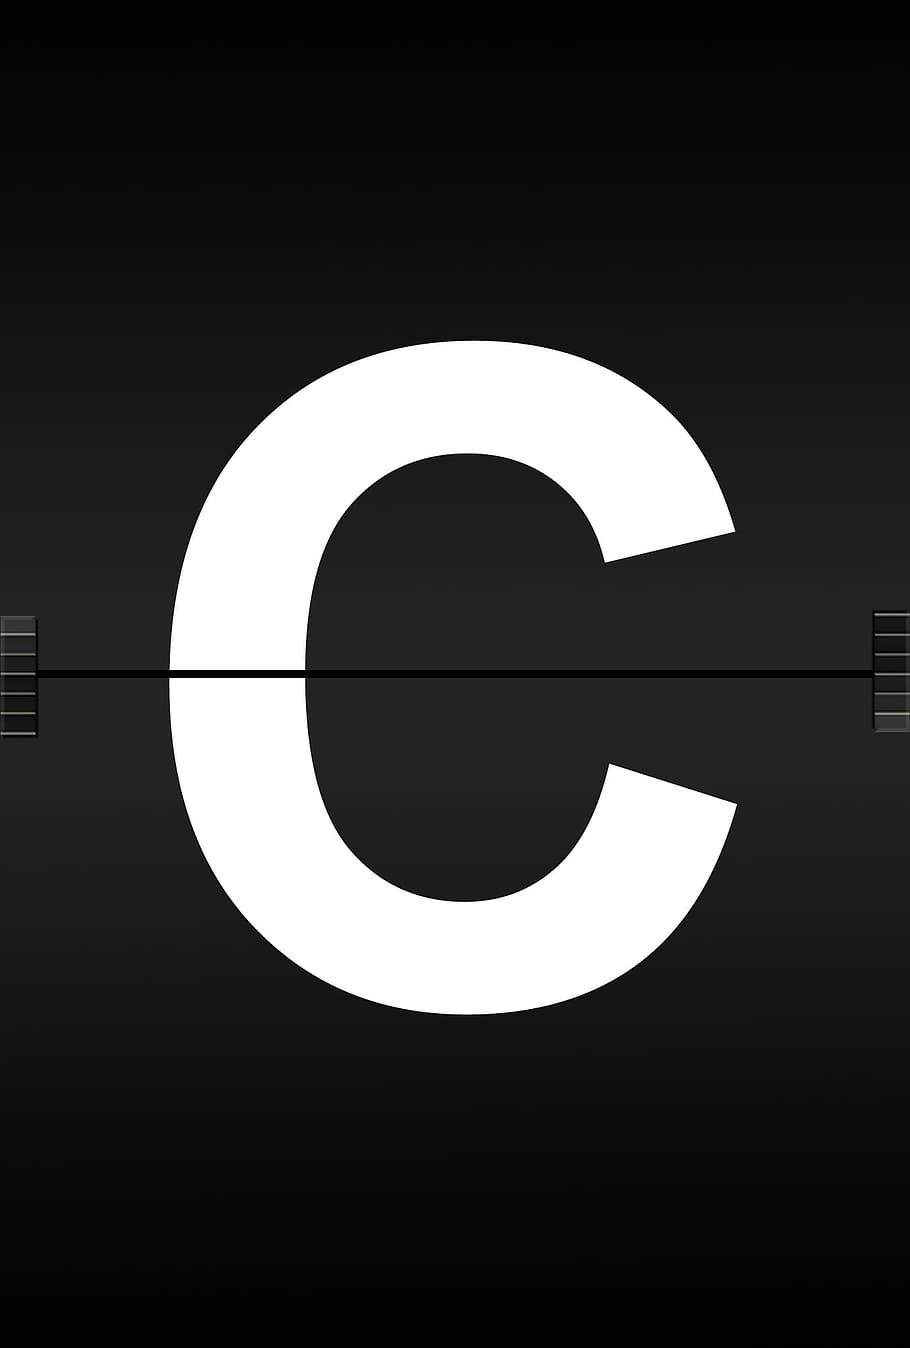 C logo, letters, abc, alphabet, journal font, airport, scoreboard